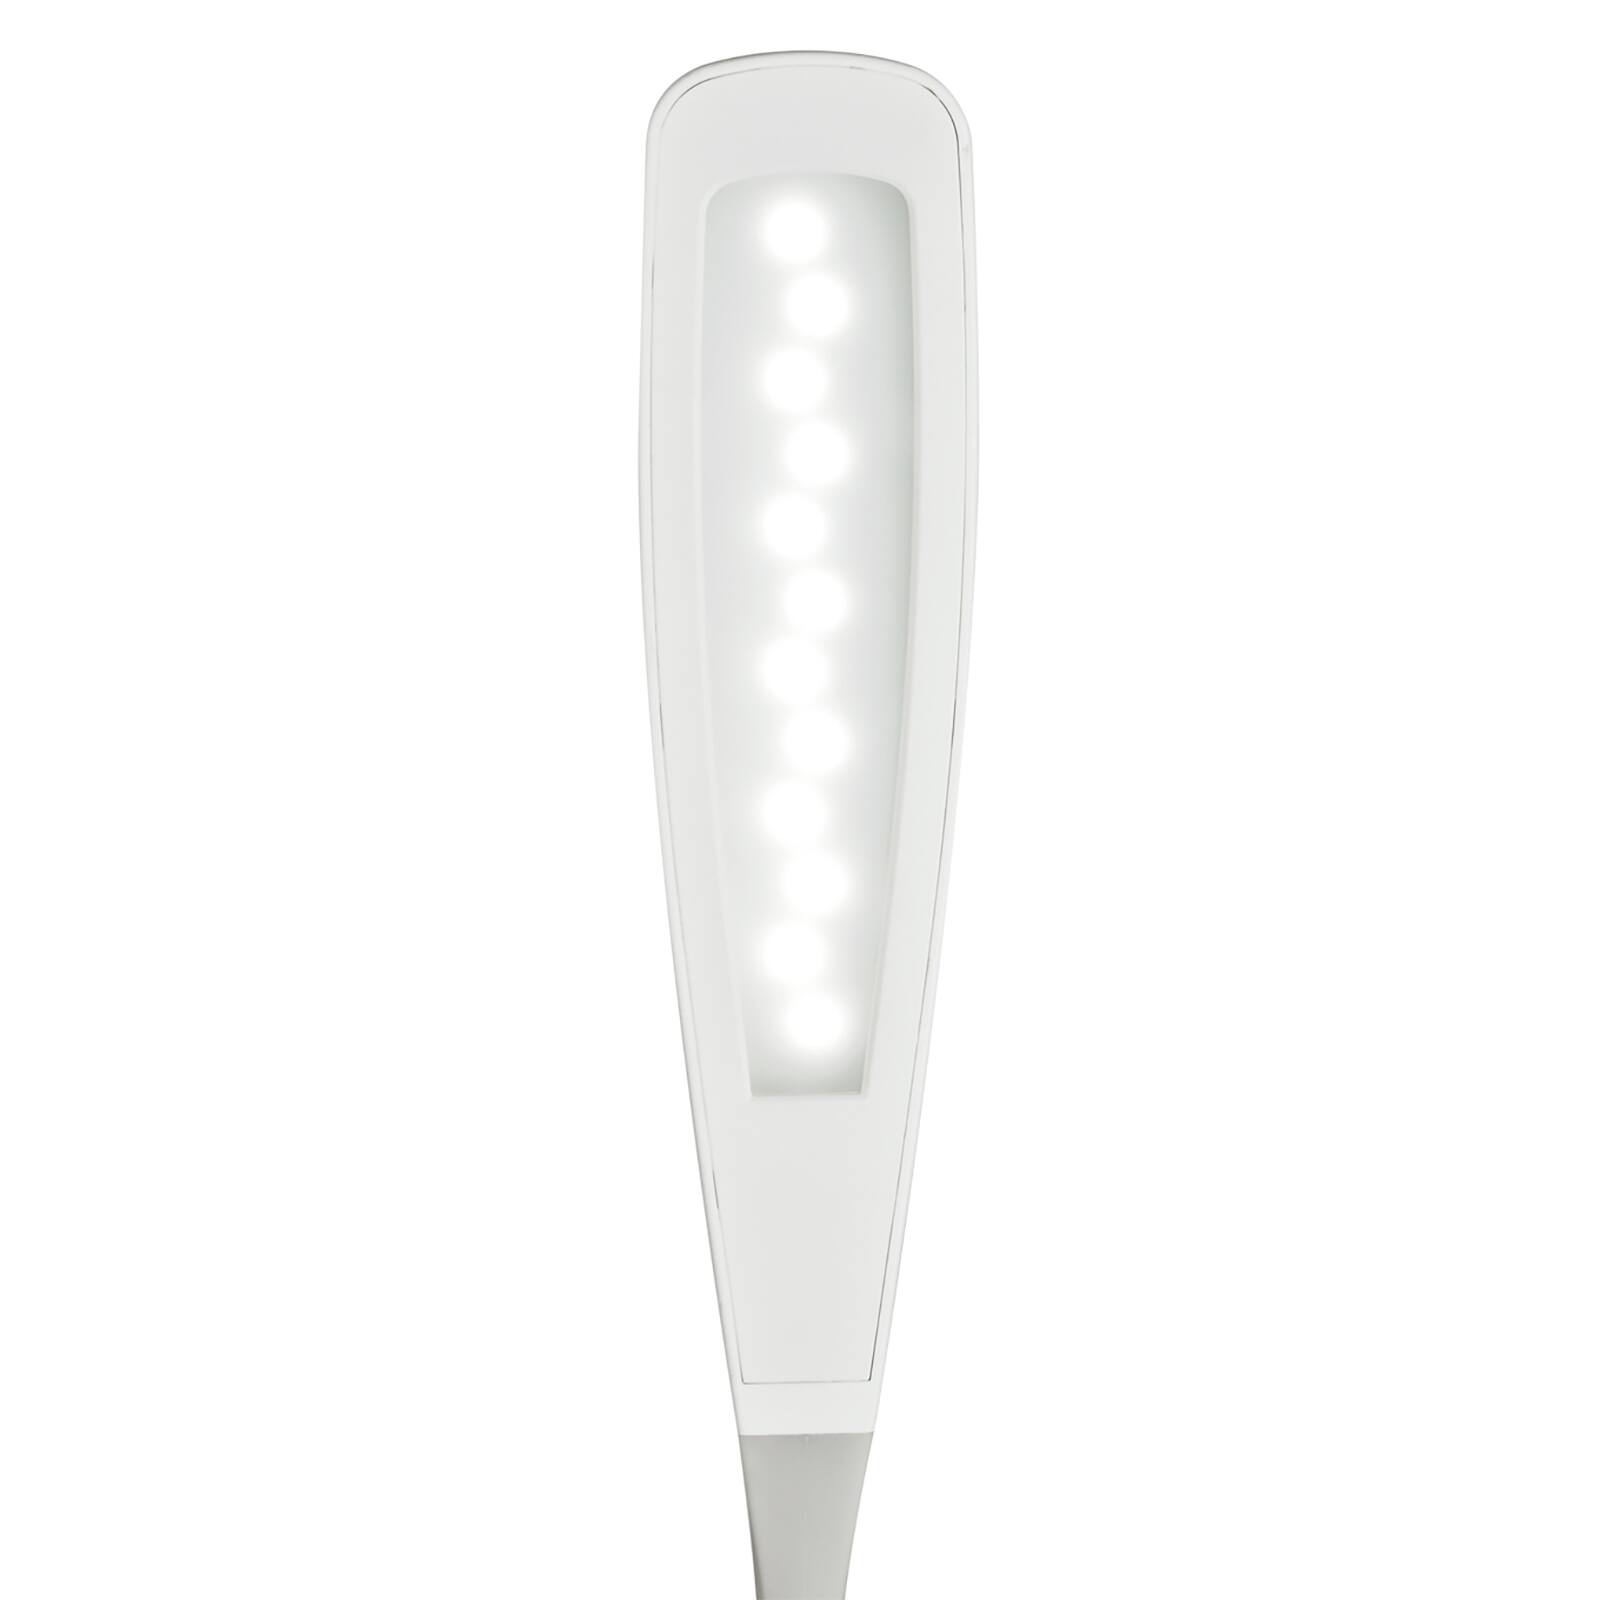 OttLite® Natural Daylight LED Flex Lamp By Ott Lite in White